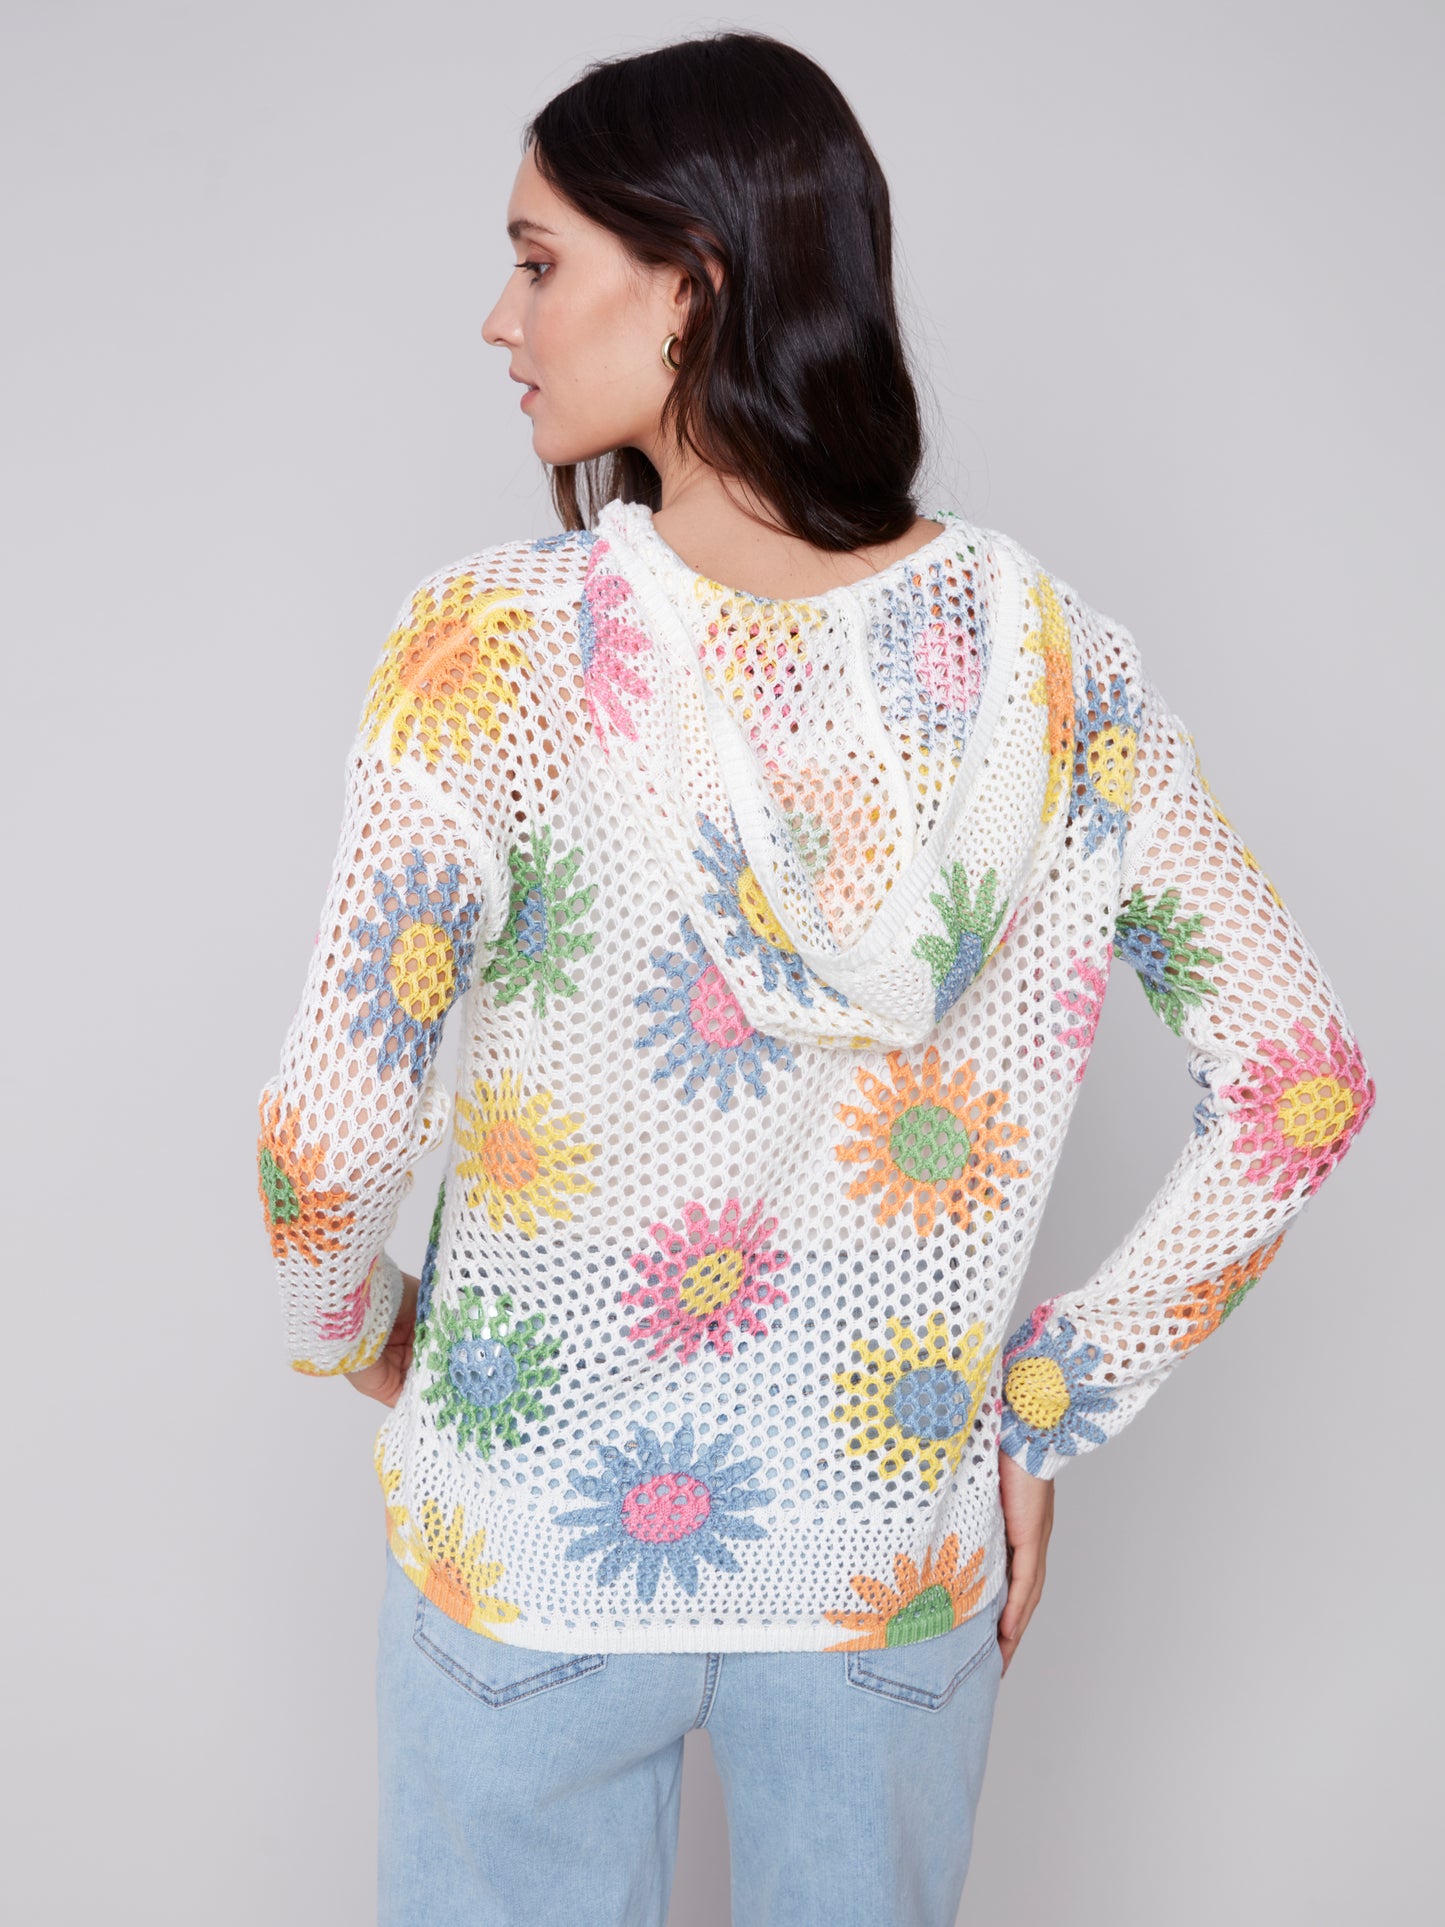 Charlie B Fishnet Hoodie Sweater w/Printed Flowers Daisies C2615P-540P-P565